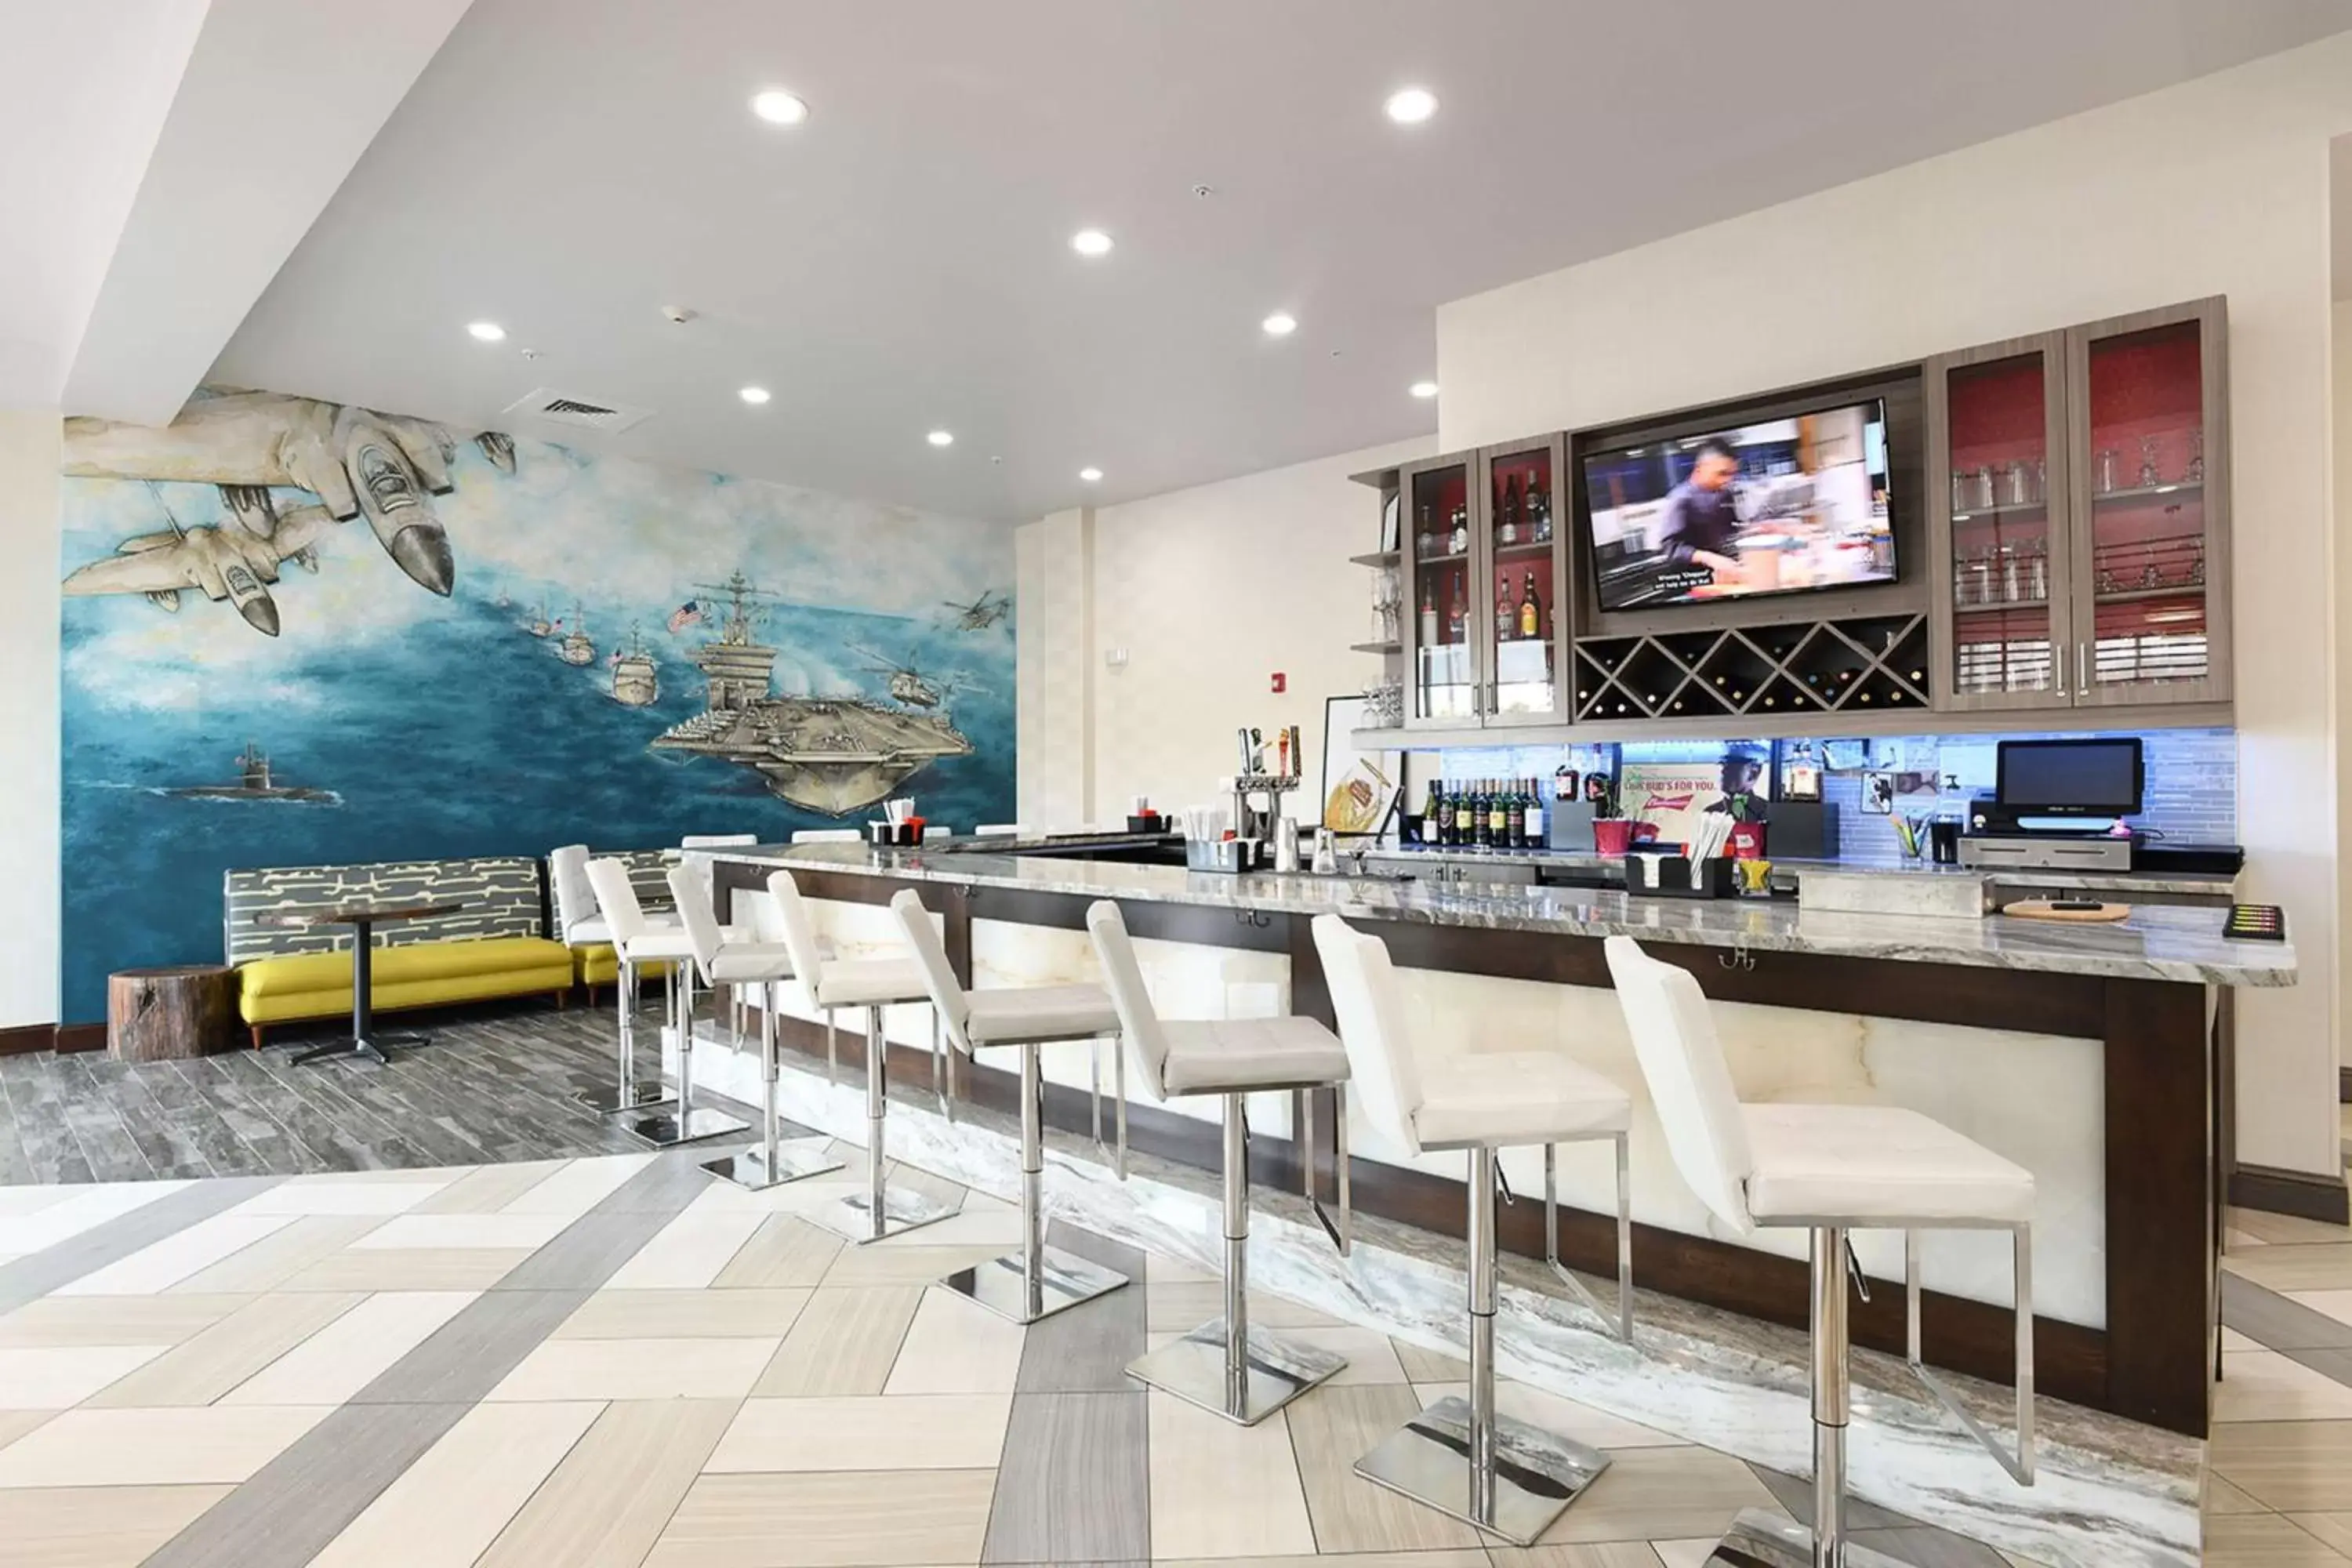 Lounge or bar, Restaurant/Places to Eat in Hilton Garden Inn Jacksonville